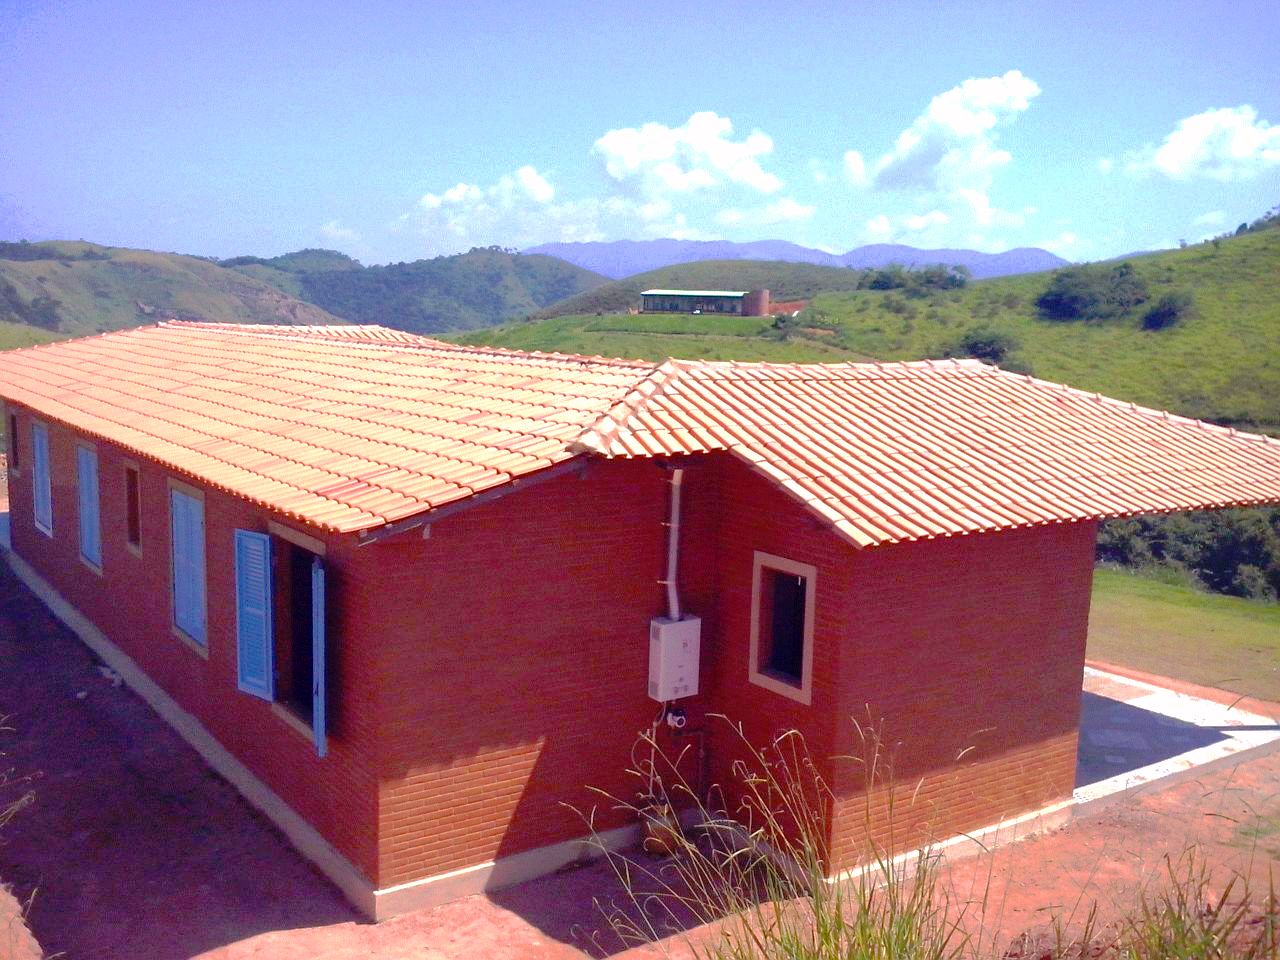 Construção com tijolo ecológico Trindade em Vassouras - RJ